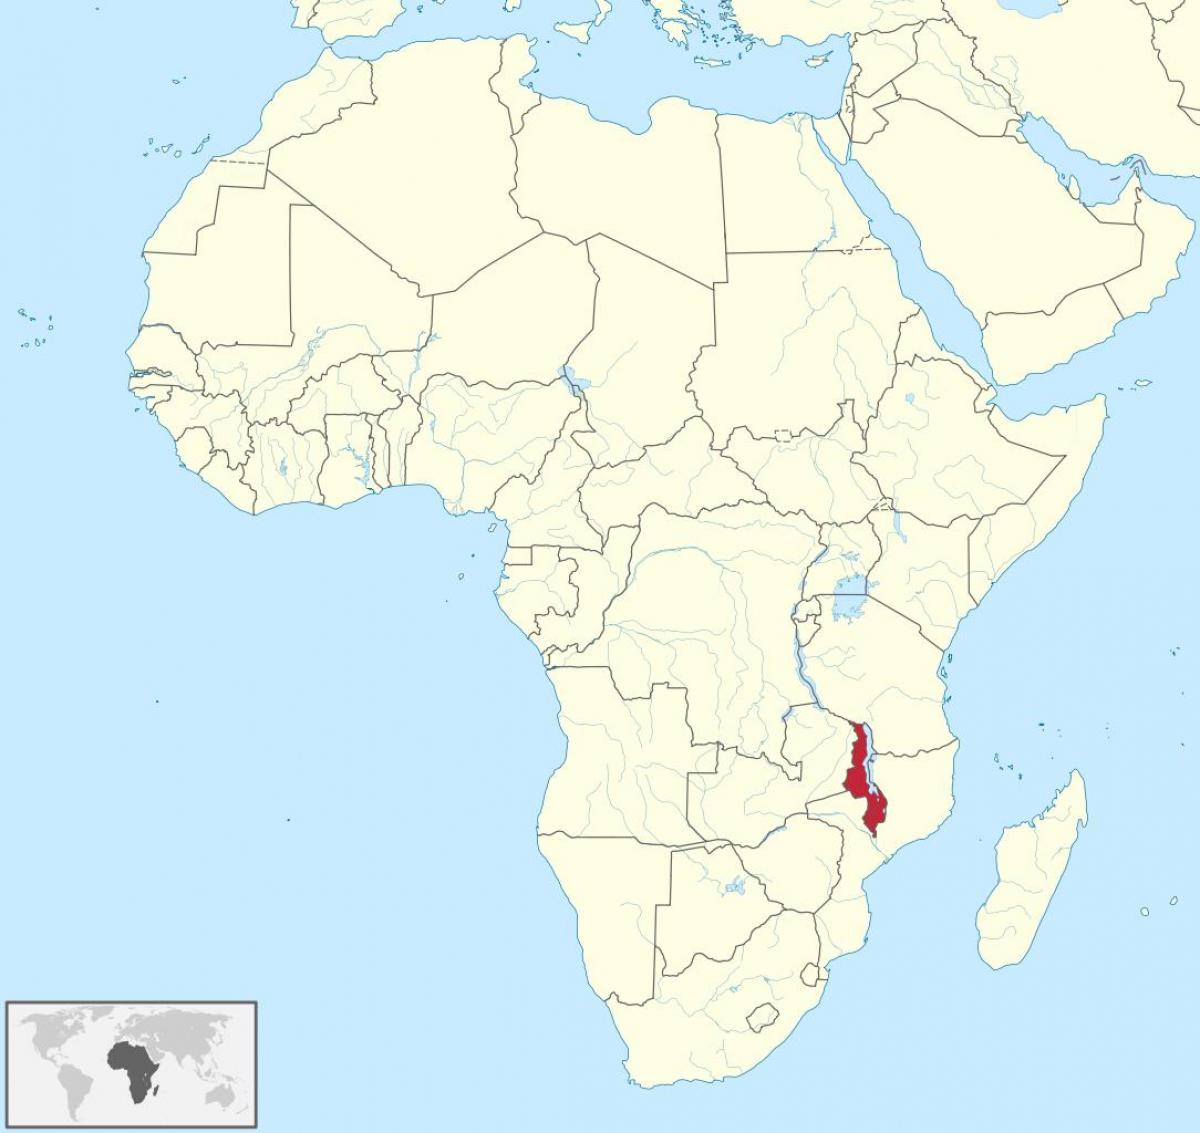 karta Afrike, pokazujući Malavi